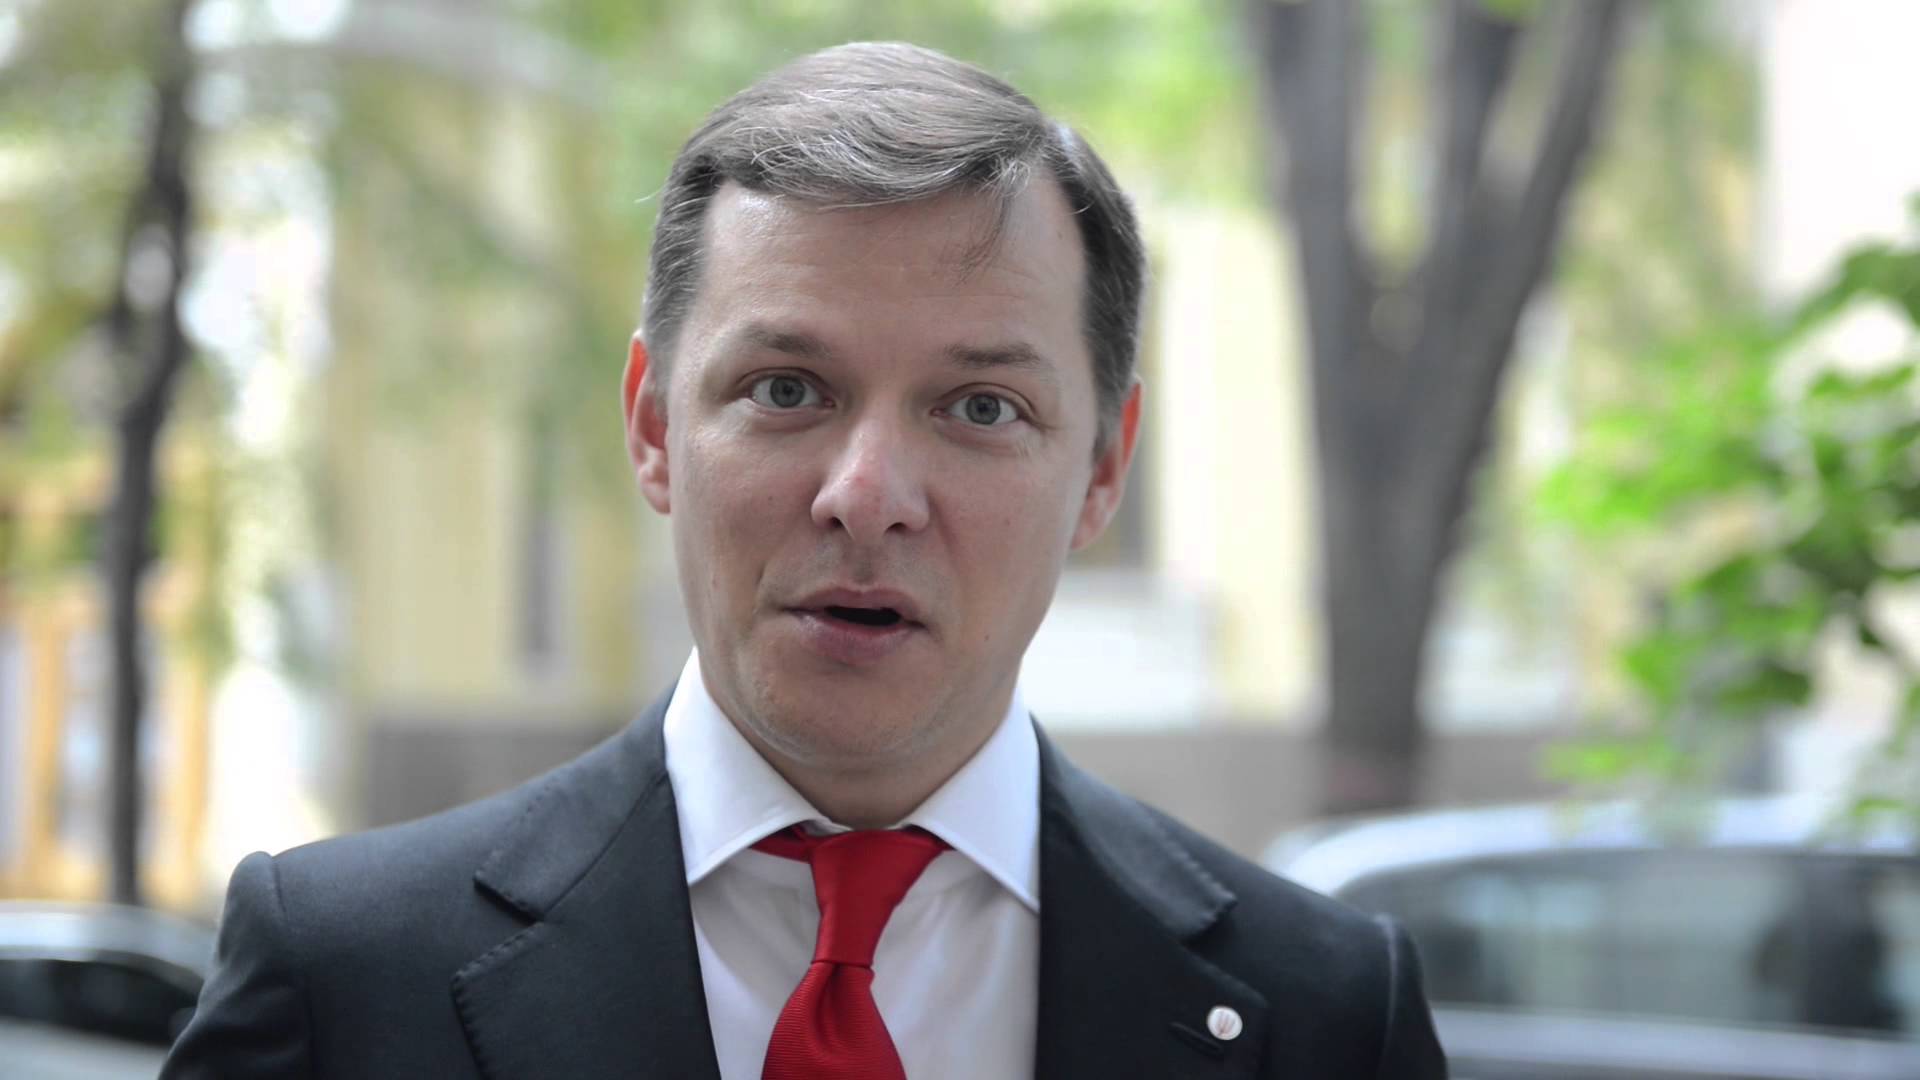 В’ячеслав Козак: «Маю побоювання, що політики-ляльководи намагатимуться зірвати обрання голови правління ПАТ НСТУ»